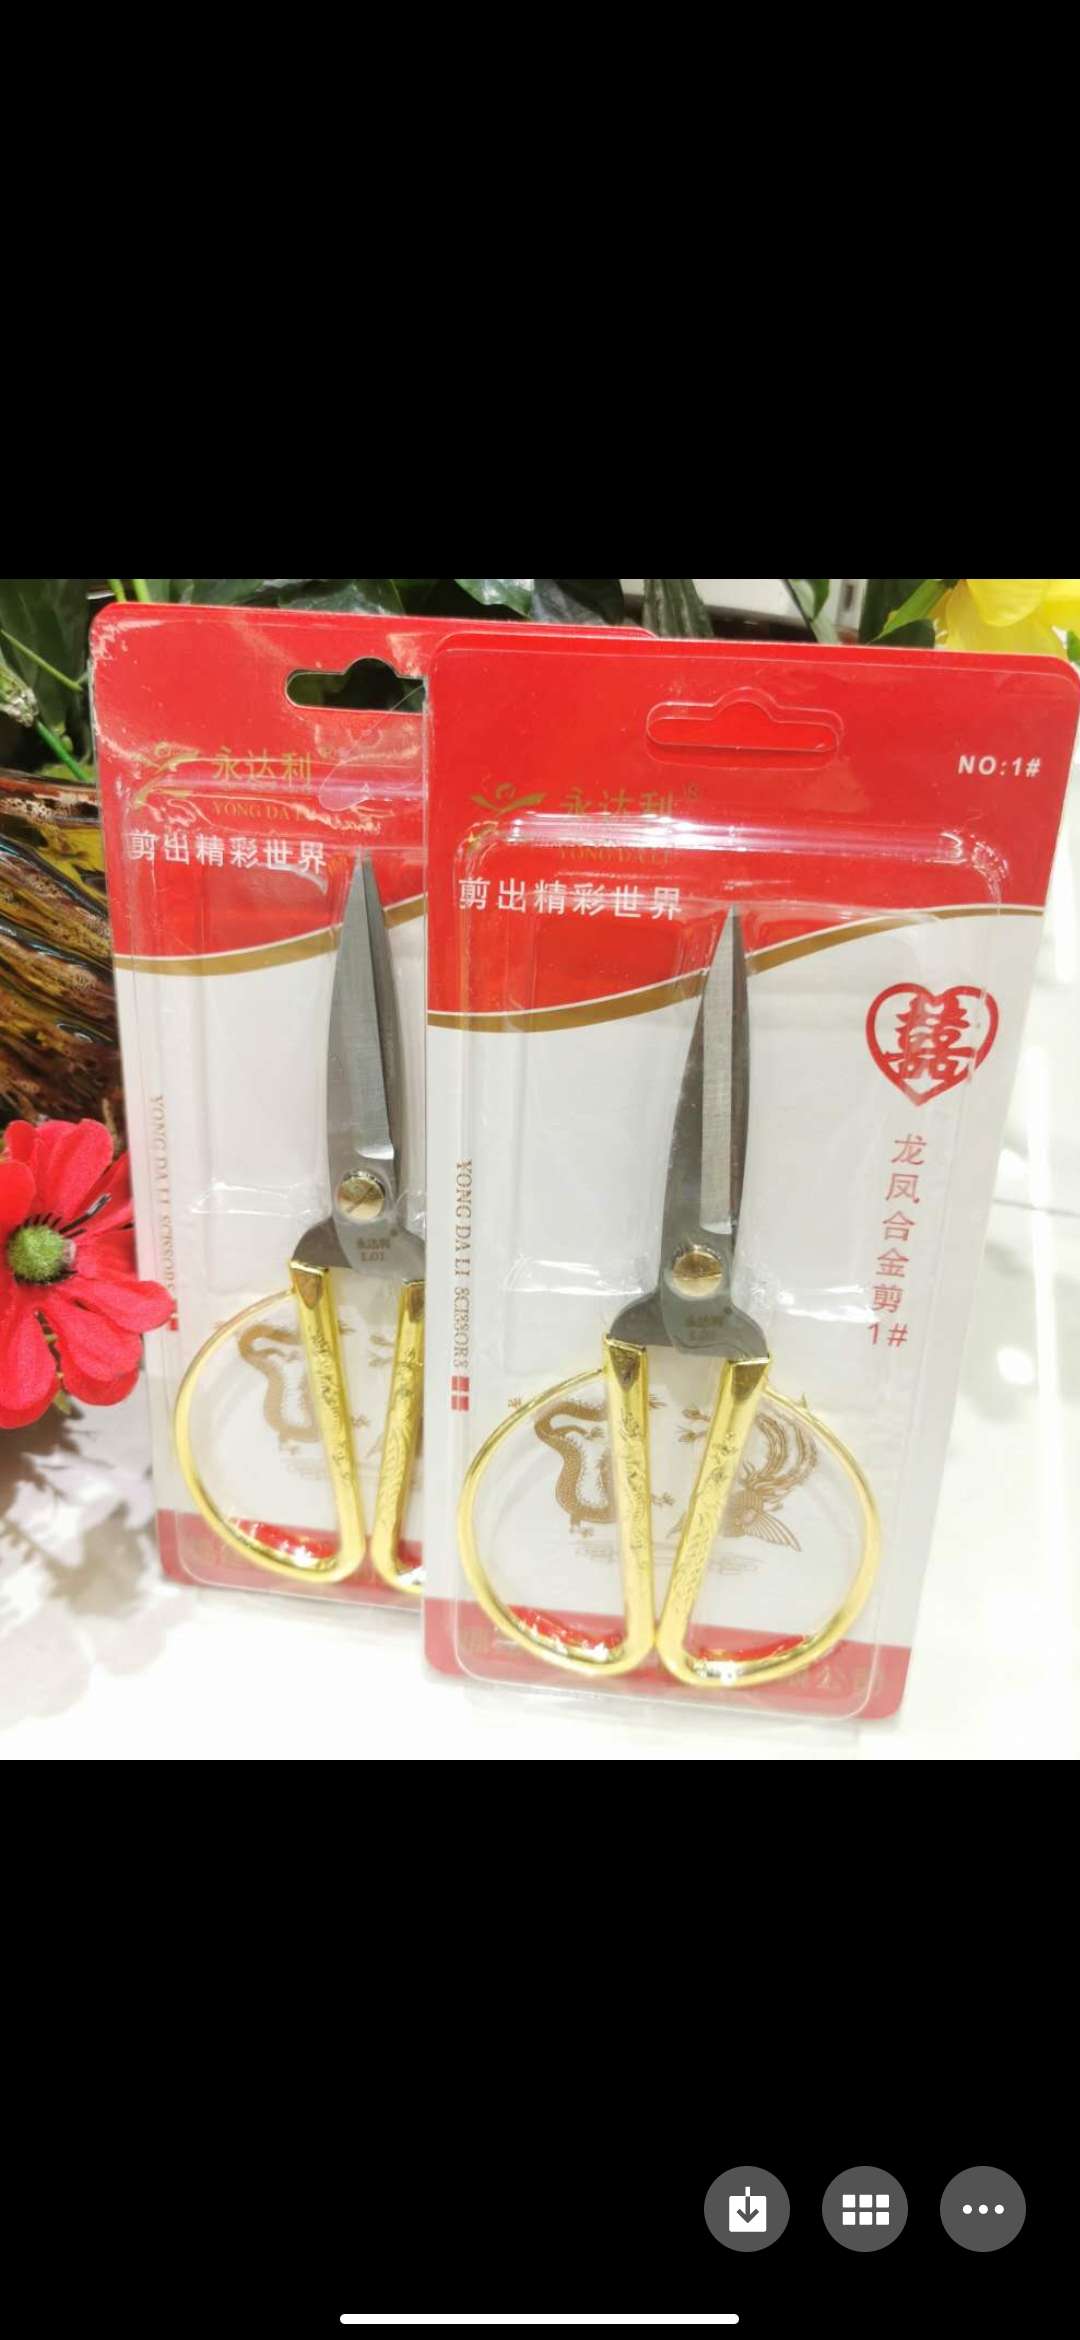 1#龙凤剪刀刀具剪刀日用百货家居用品质量可靠